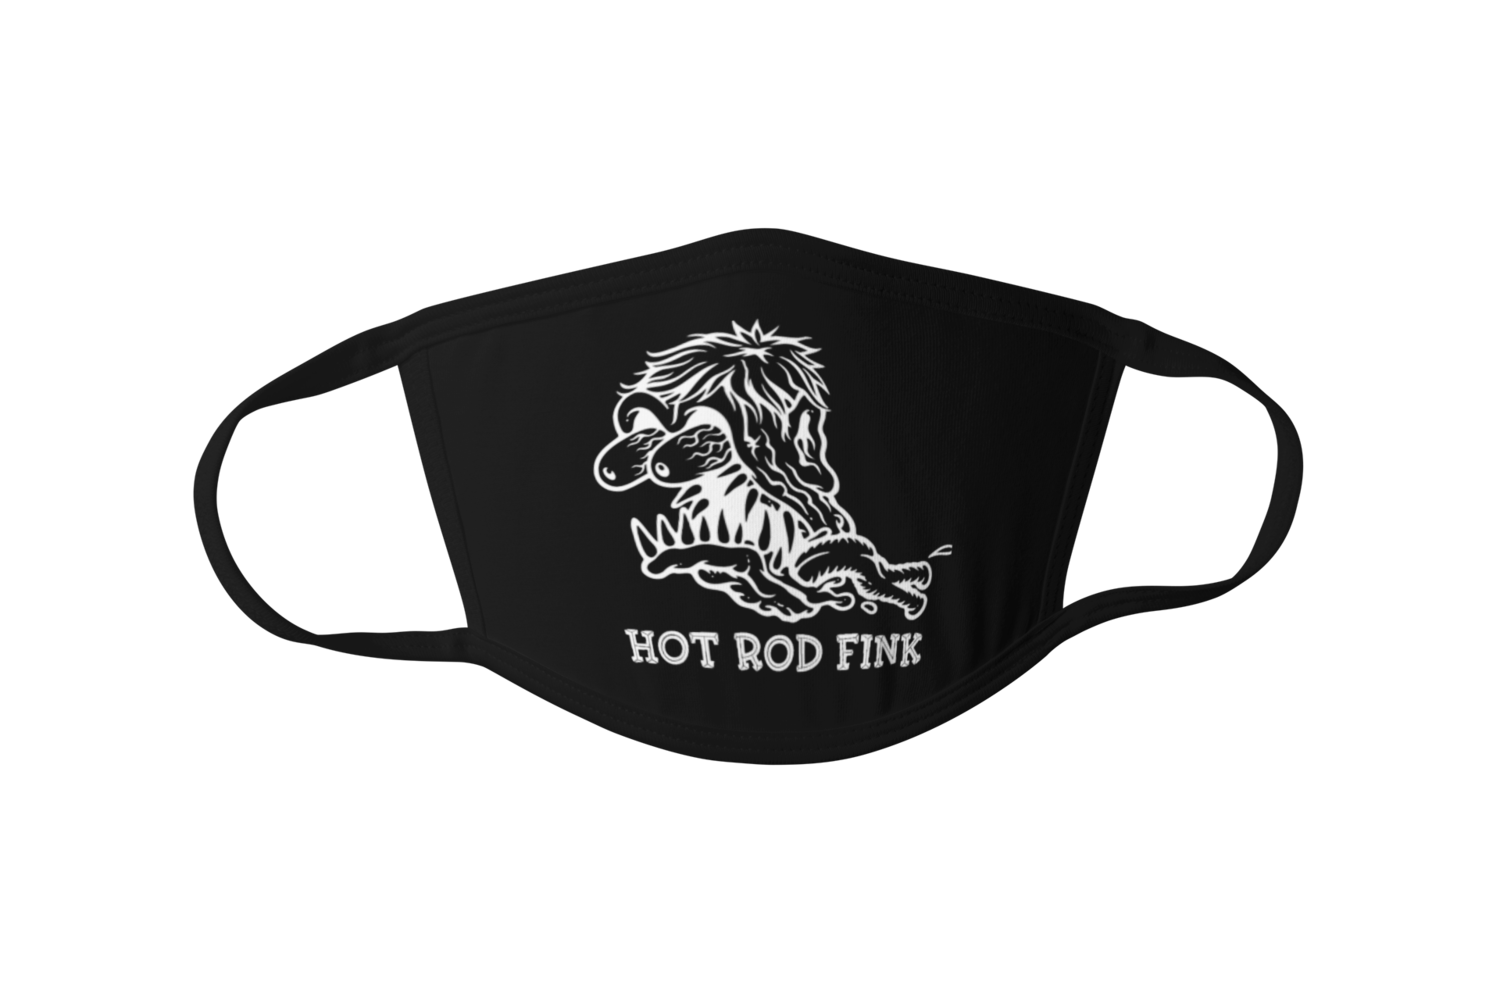 Hot Rod Fink logo Mask